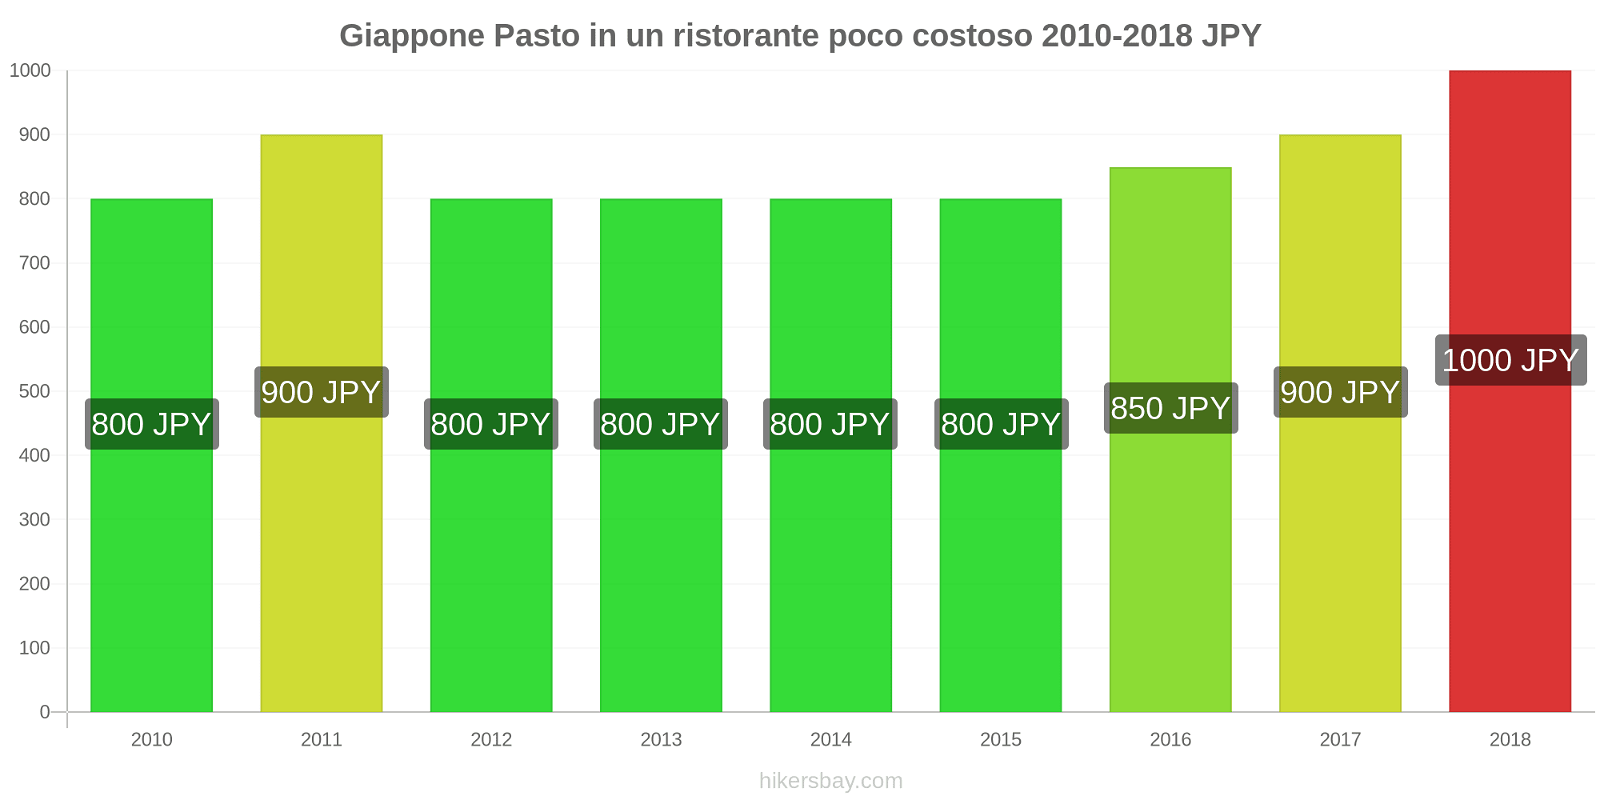 Giappone cambi di prezzo Pasto in un ristorante economico hikersbay.com